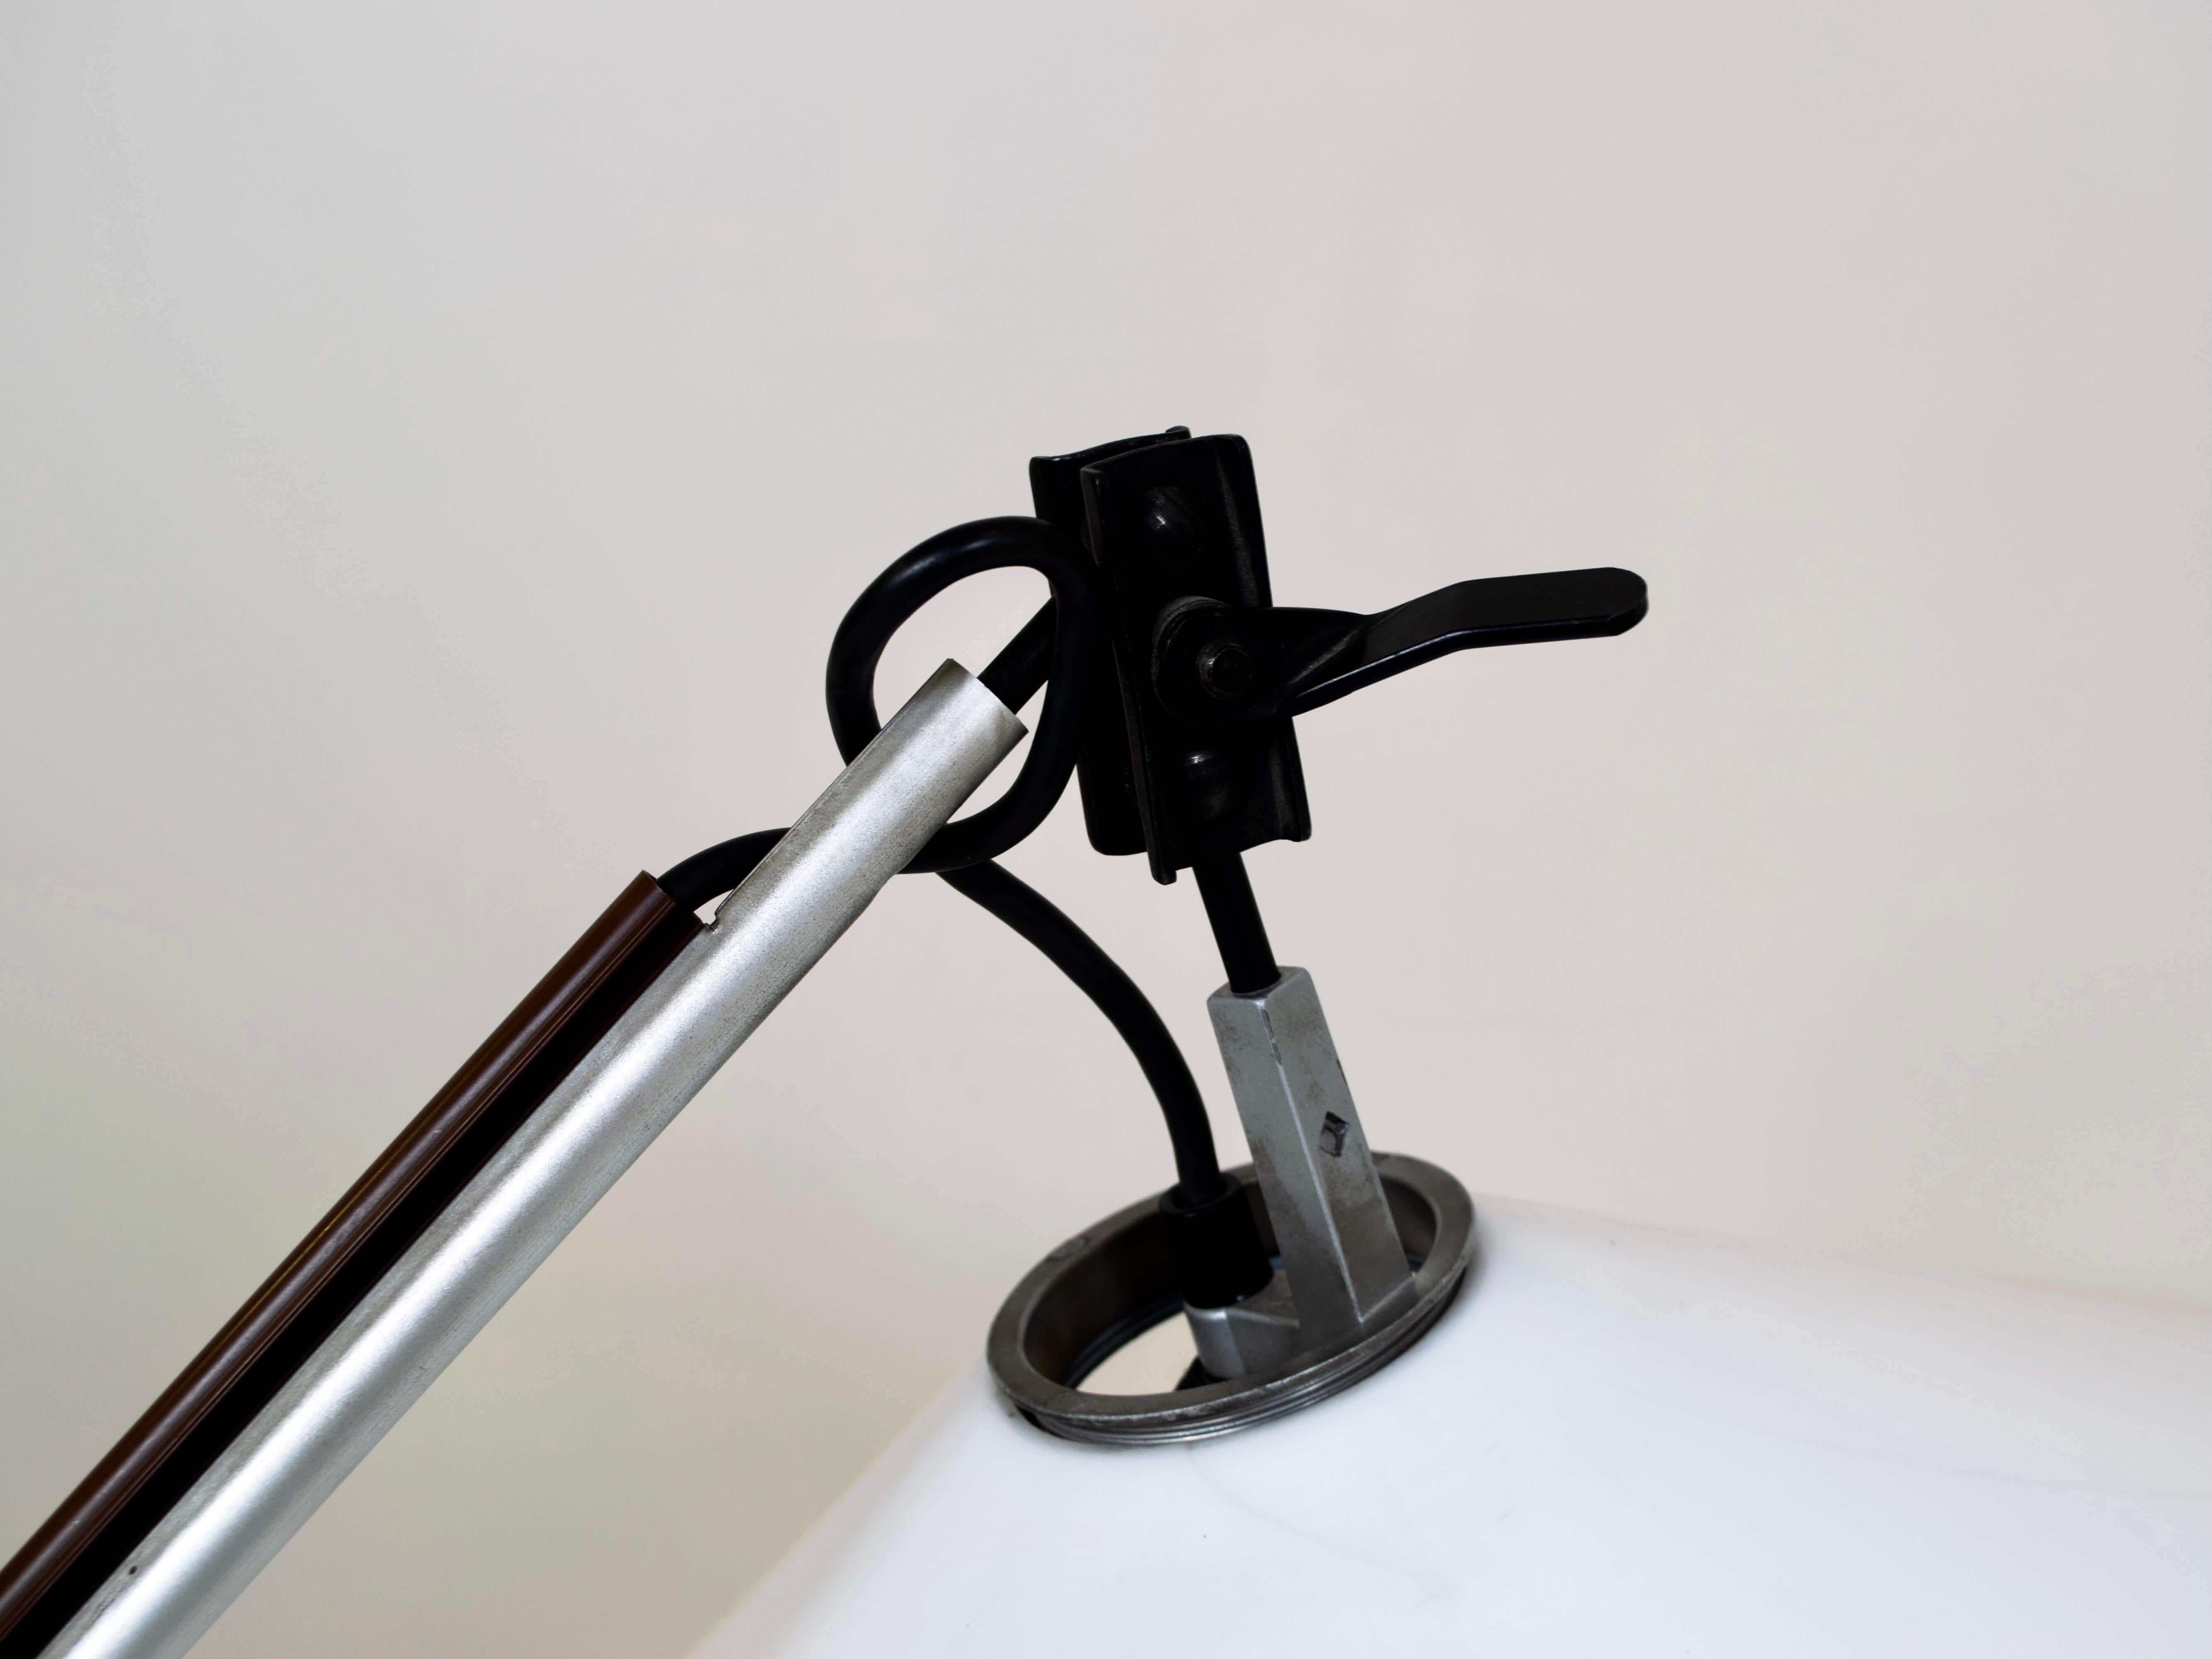 Schöne verstellbare Tischleuchte 'Aggregate' von Enzo Mari und Giancarlo Fassina für Artemide, 1970er Jahre. Diese Lampe ist eine beeindruckende Ergänzung für Ihren Tisch oder Schreibtisch. Der Sockel ist aus schwarzem Eisen und der Lampenschirm aus